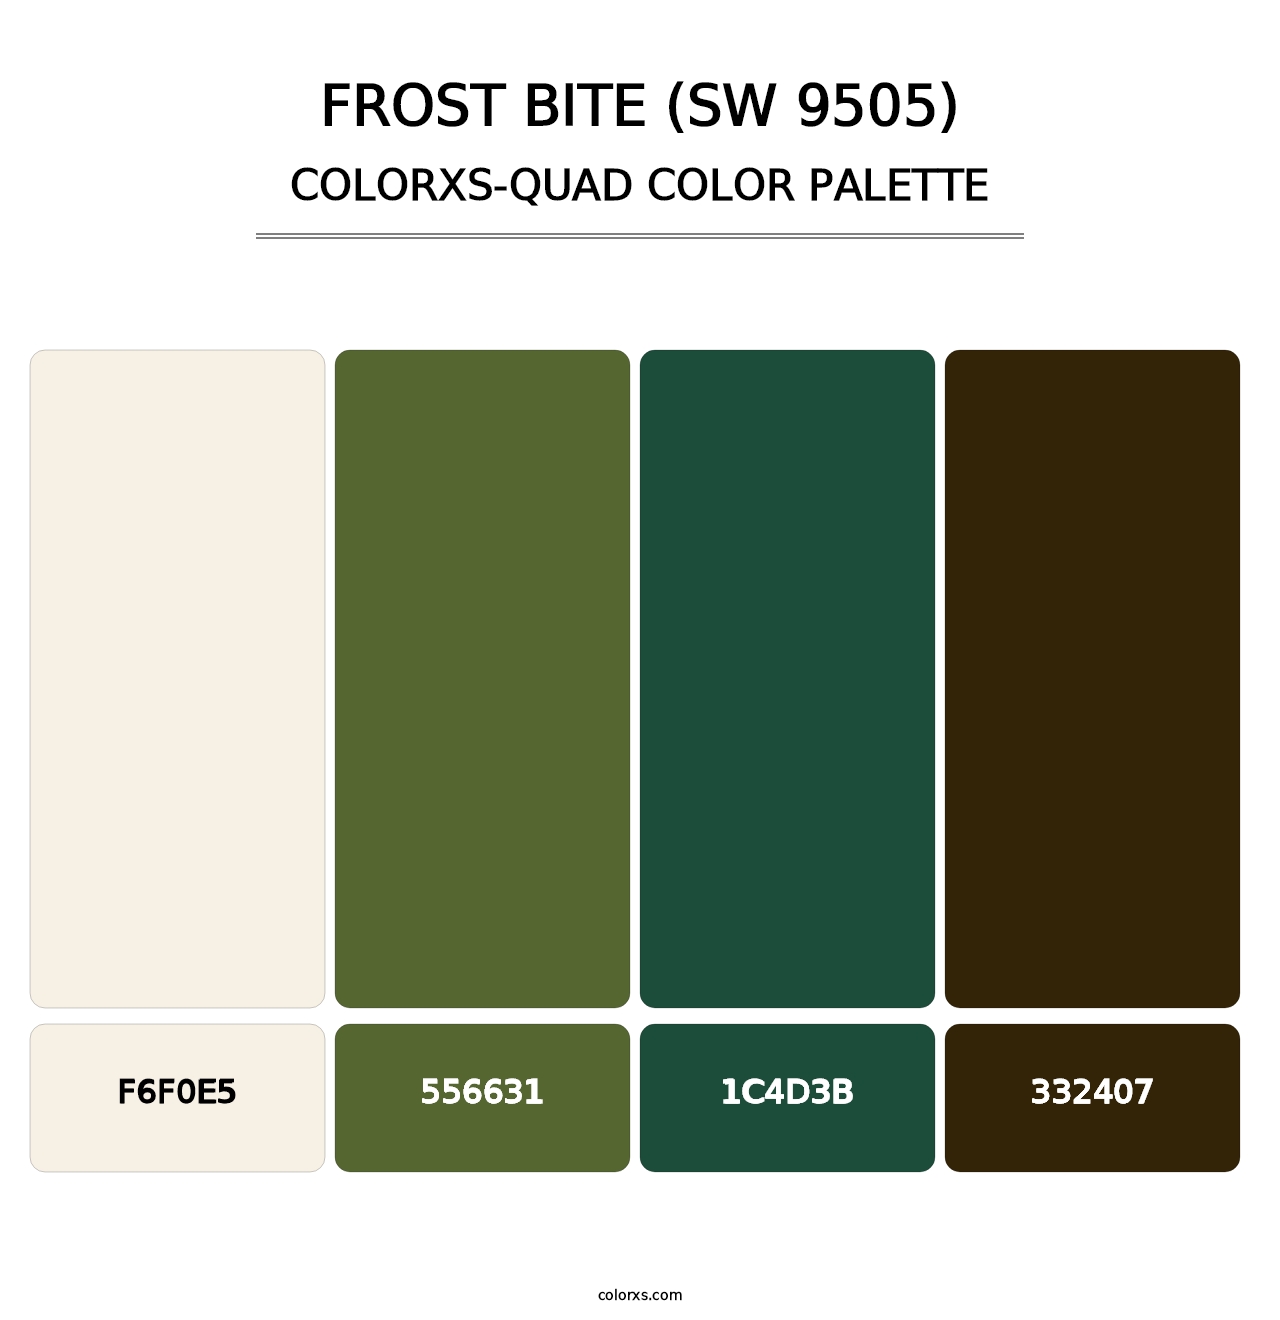 Frost Bite (SW 9505) - Colorxs Quad Palette